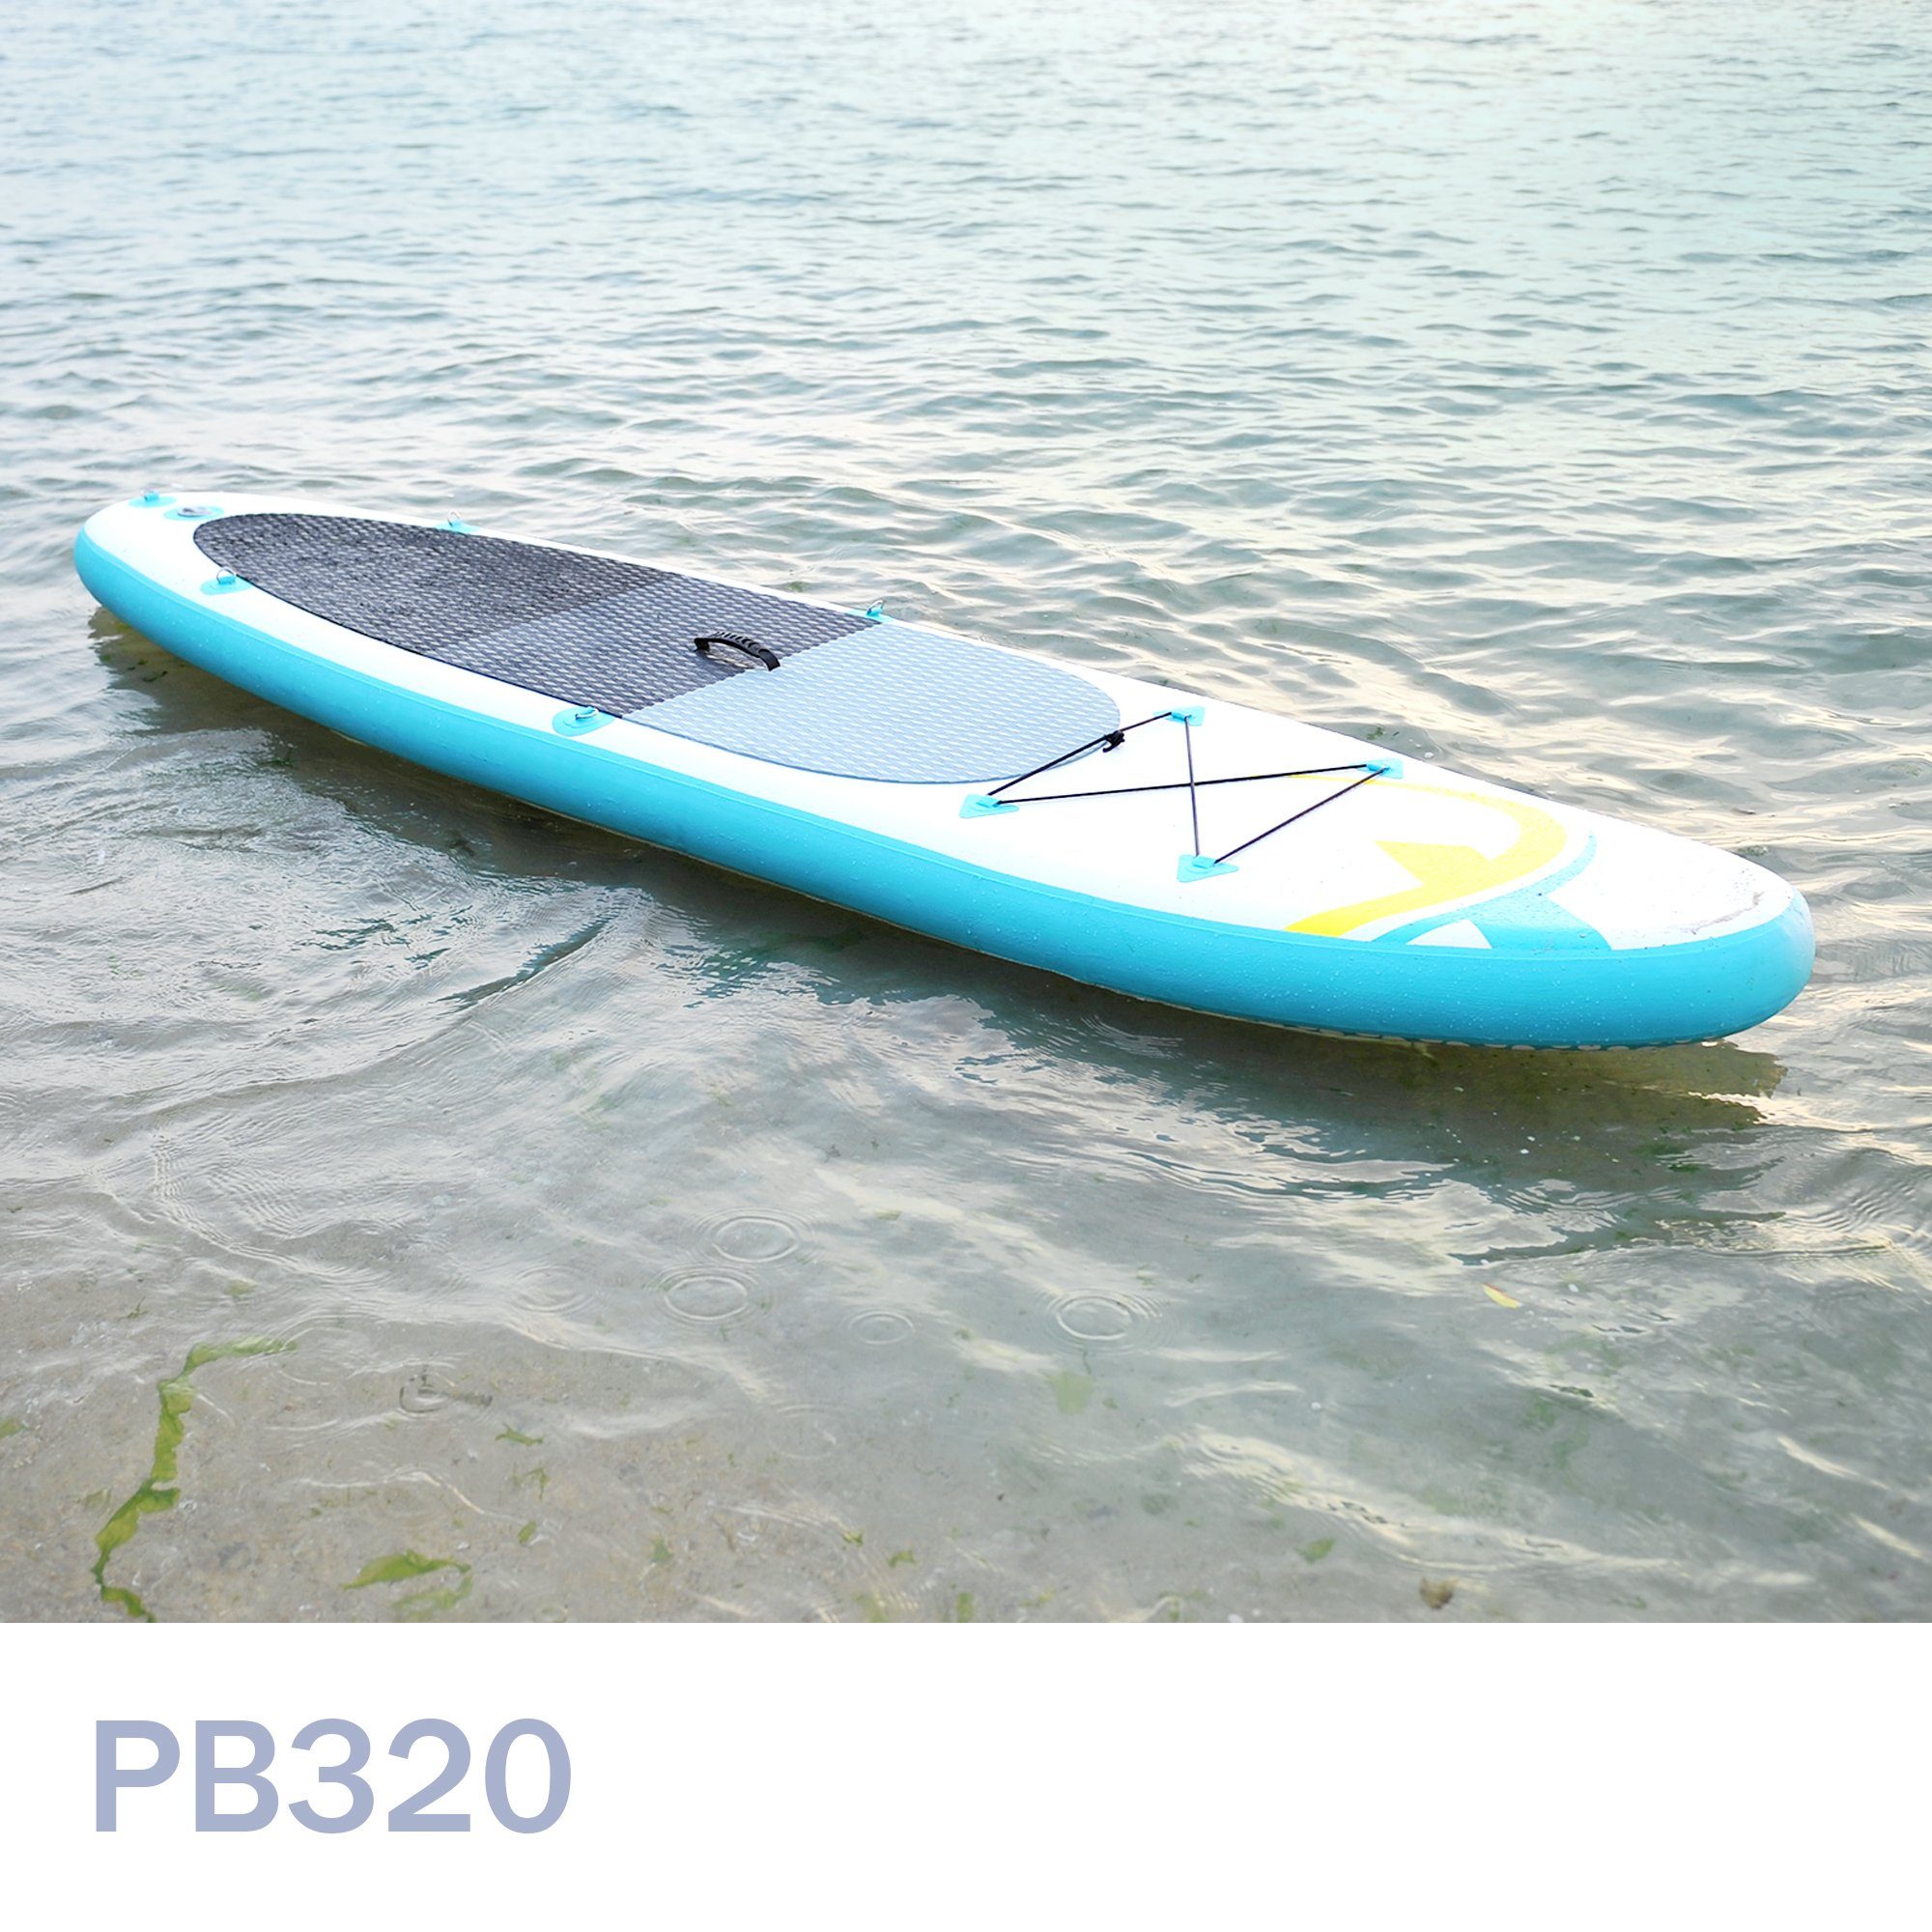 NEMAXX Inflatable SUP-Board, Stand Paddel Tasche, - Nemaxx - 320x78x15cm, up Surfbrett, Surf-Board Paddle inkl. transportieren türkis/gelb zu PB320 & Board aufblasbar leicht 